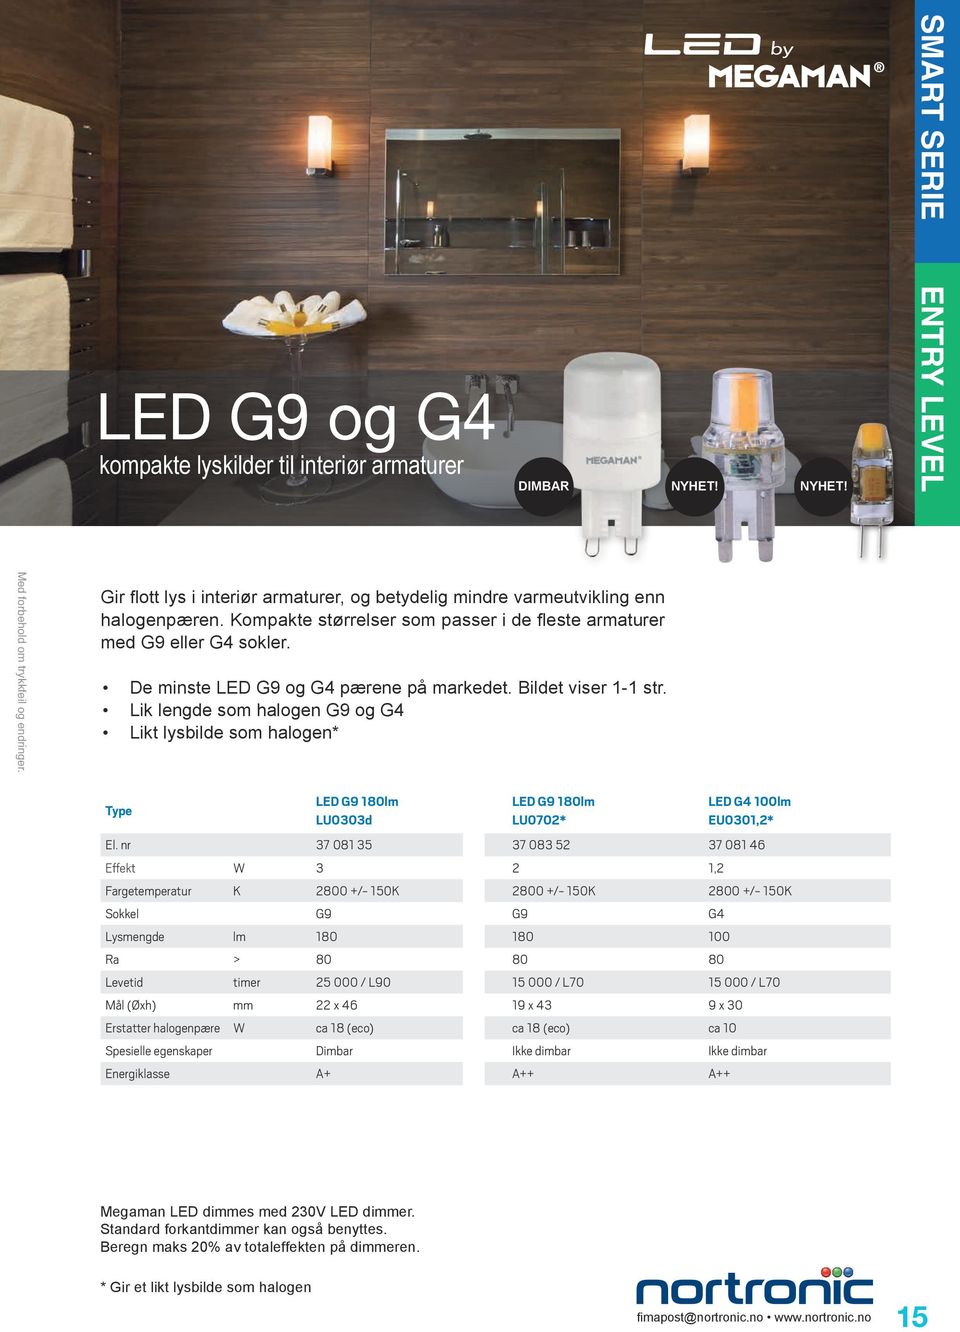 Lik lengde som halogen G9 og G4 Likt lysbilde som halogen* LED G9 180lm LU0303d LED G9 180lm LU0702* LED G4 100lm EU0301,2* El.